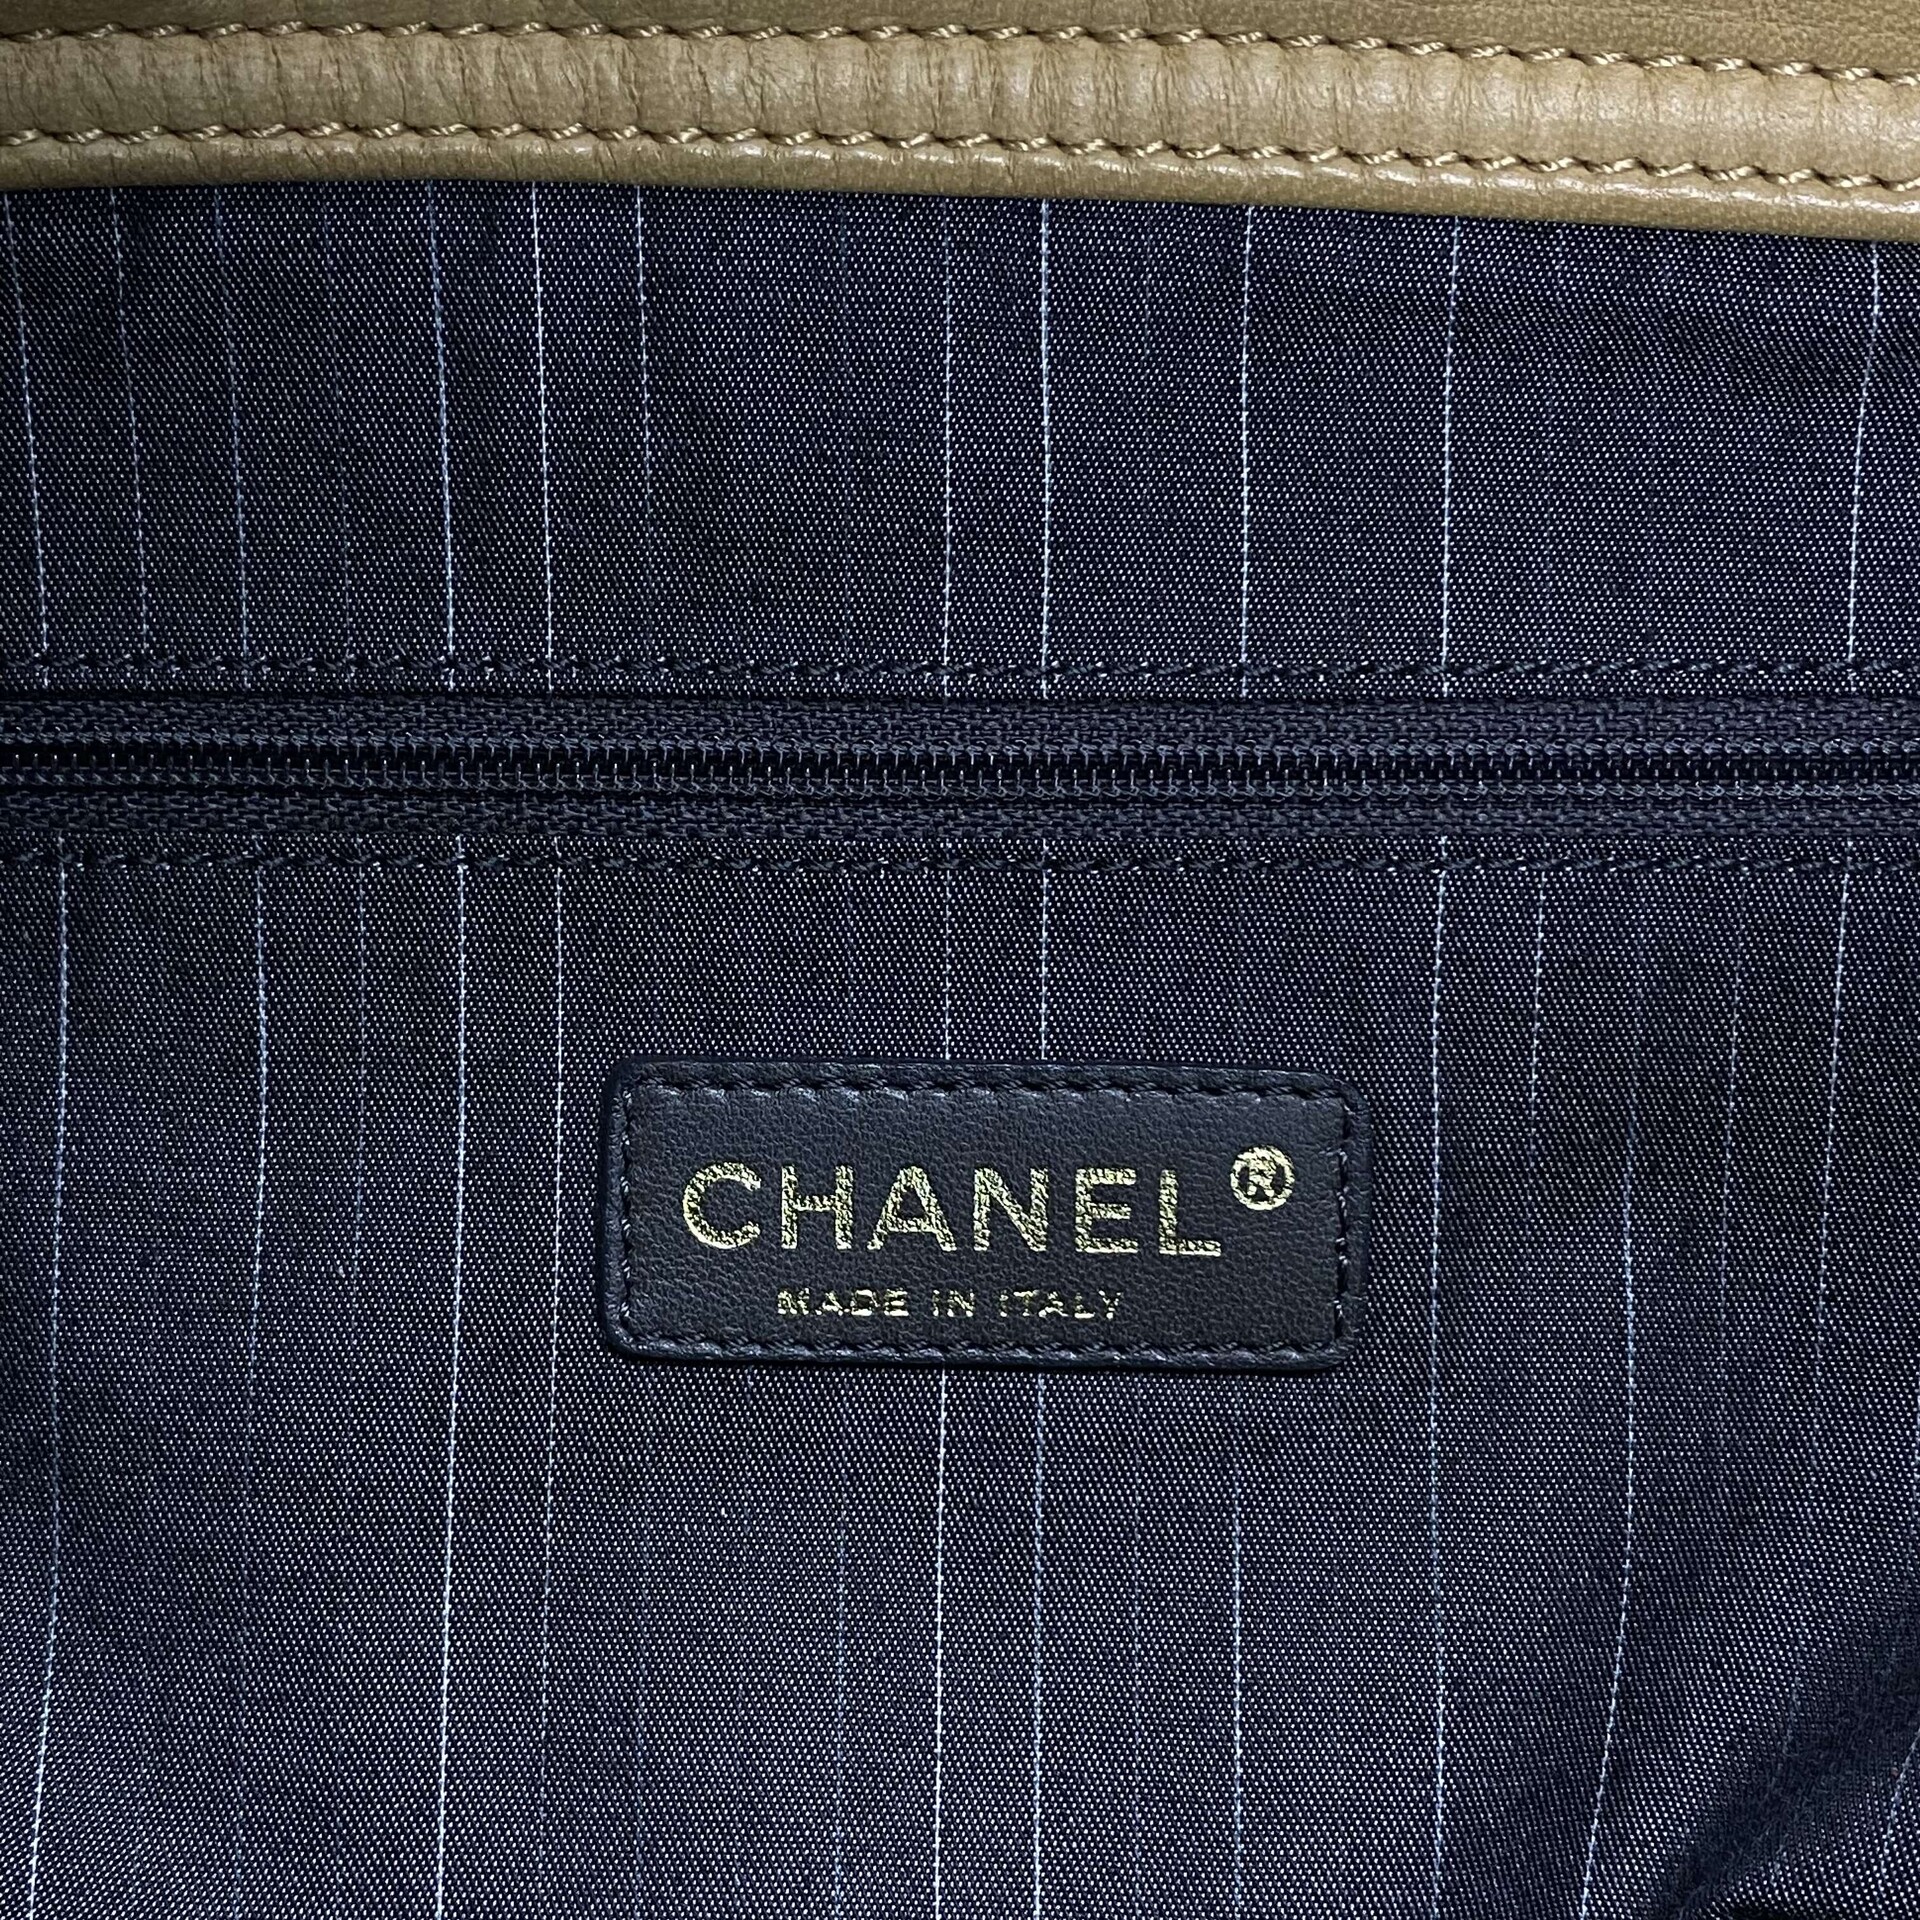 Bolsa Chanel Portobello Zip Tote Bicolor